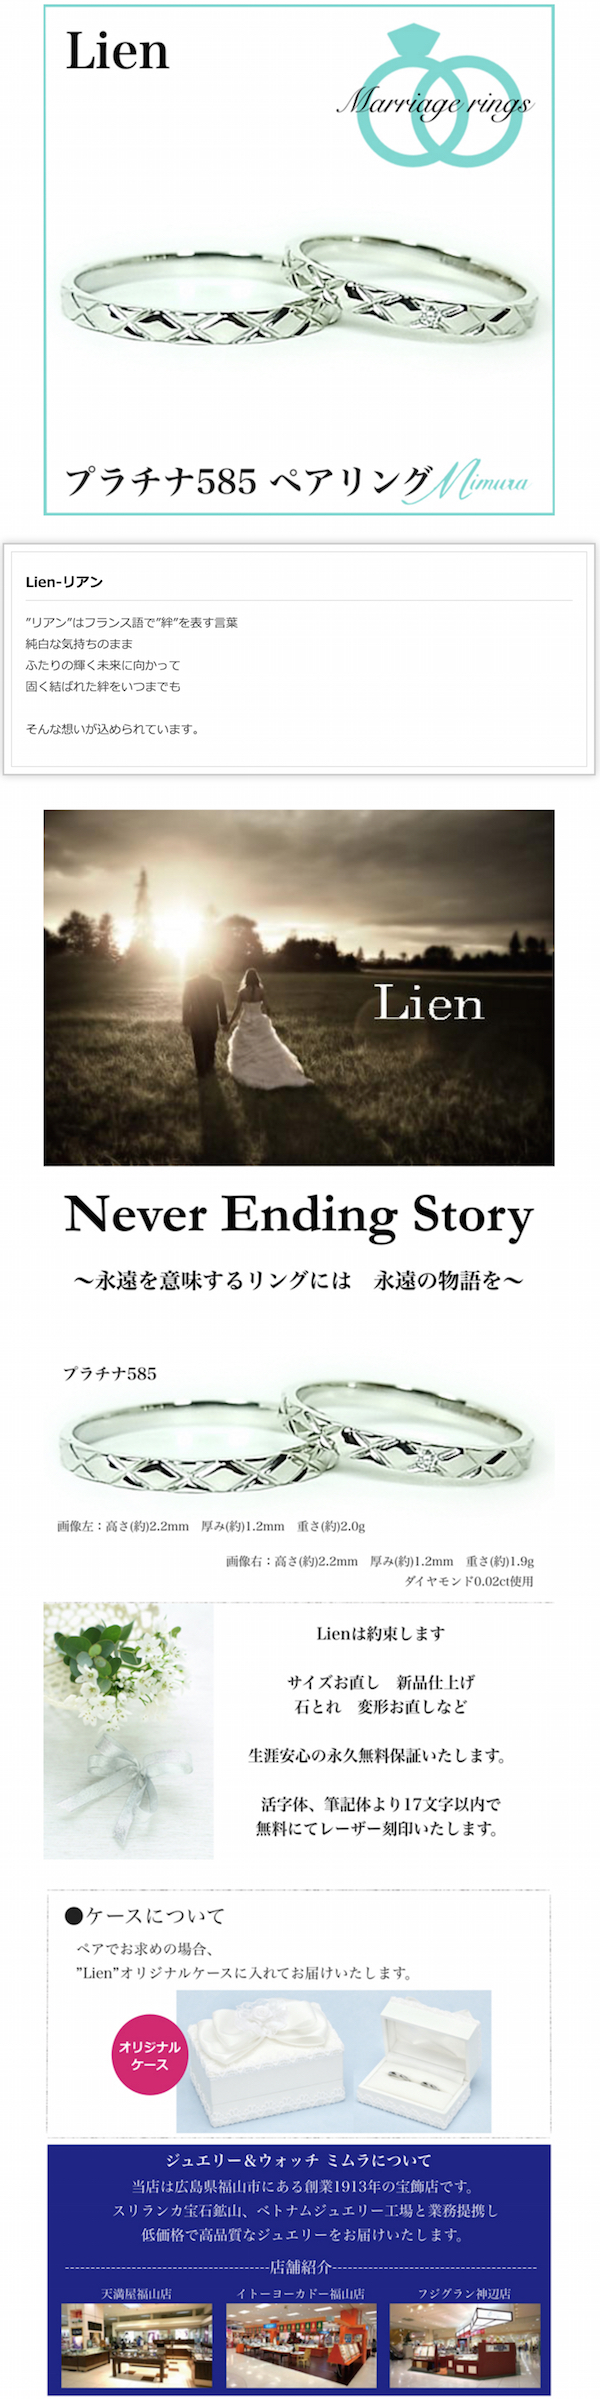 広島県福山市ブライダル結婚指輪